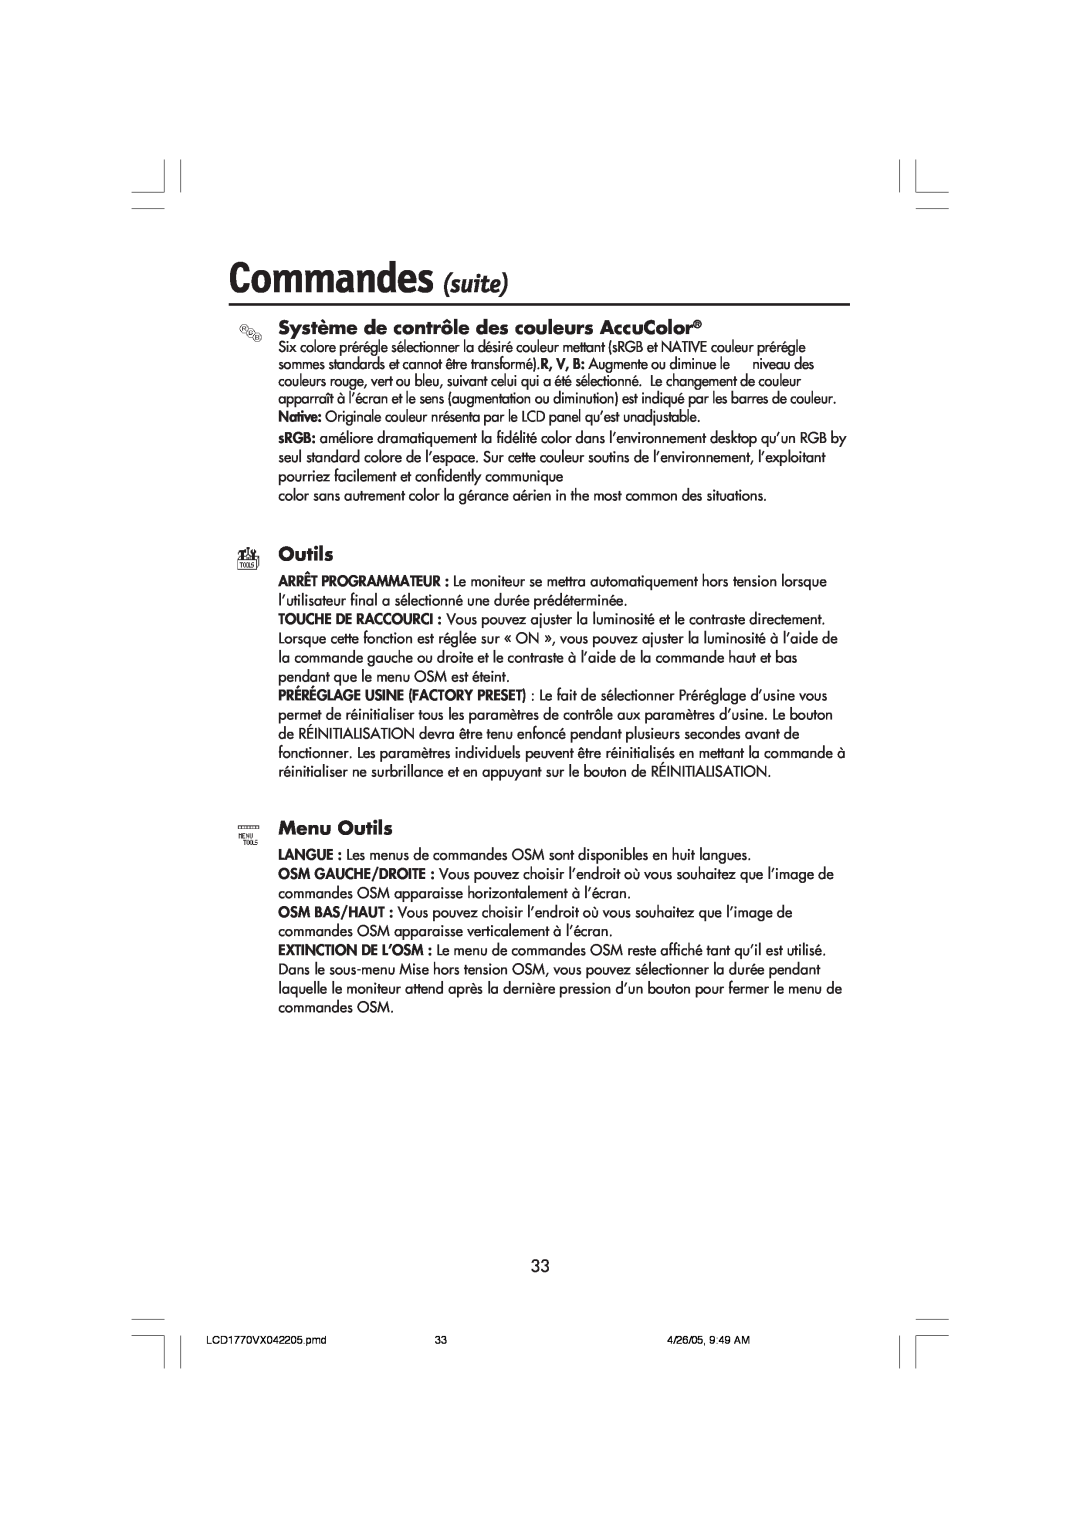 NEC LCD1770VX user manual Commandes suite, Système de contrôle des couleurs AccuColor, Menu Outils 